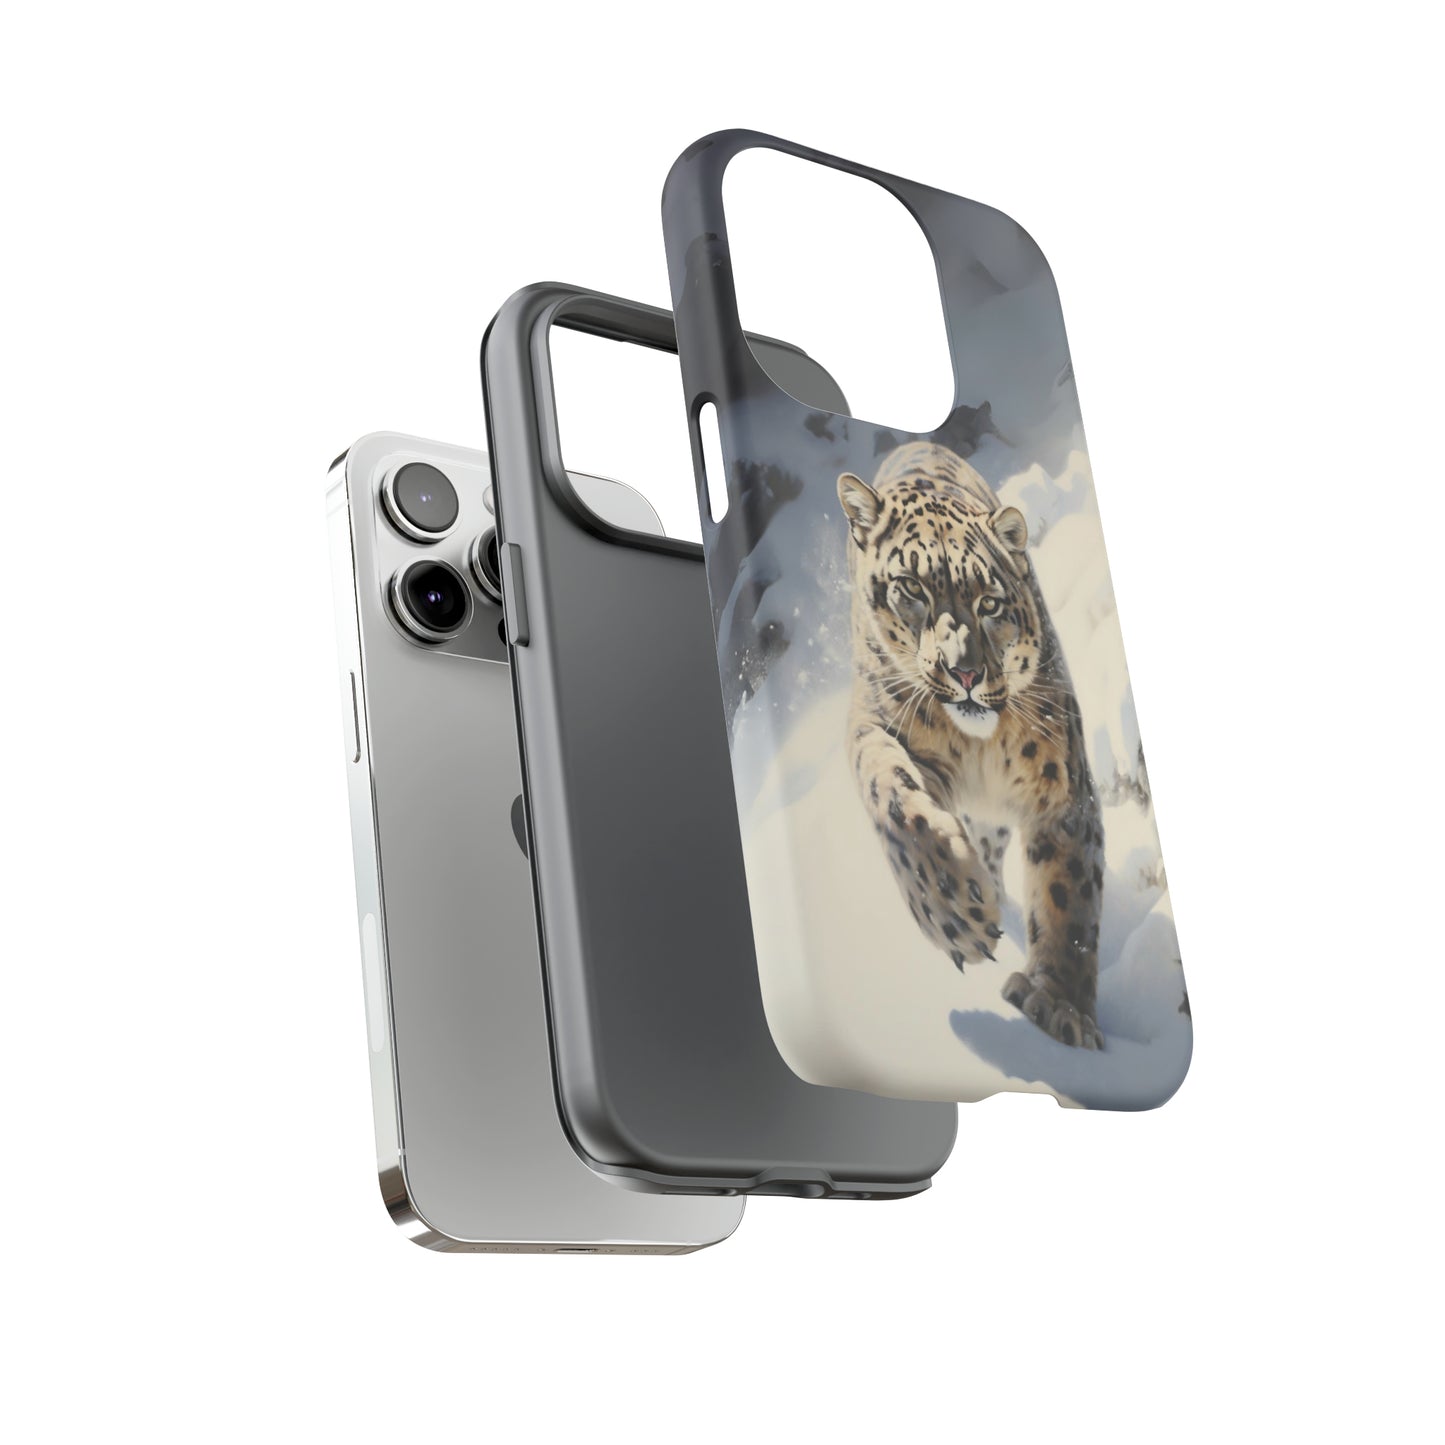 Snow Leopard Tough Phone Case